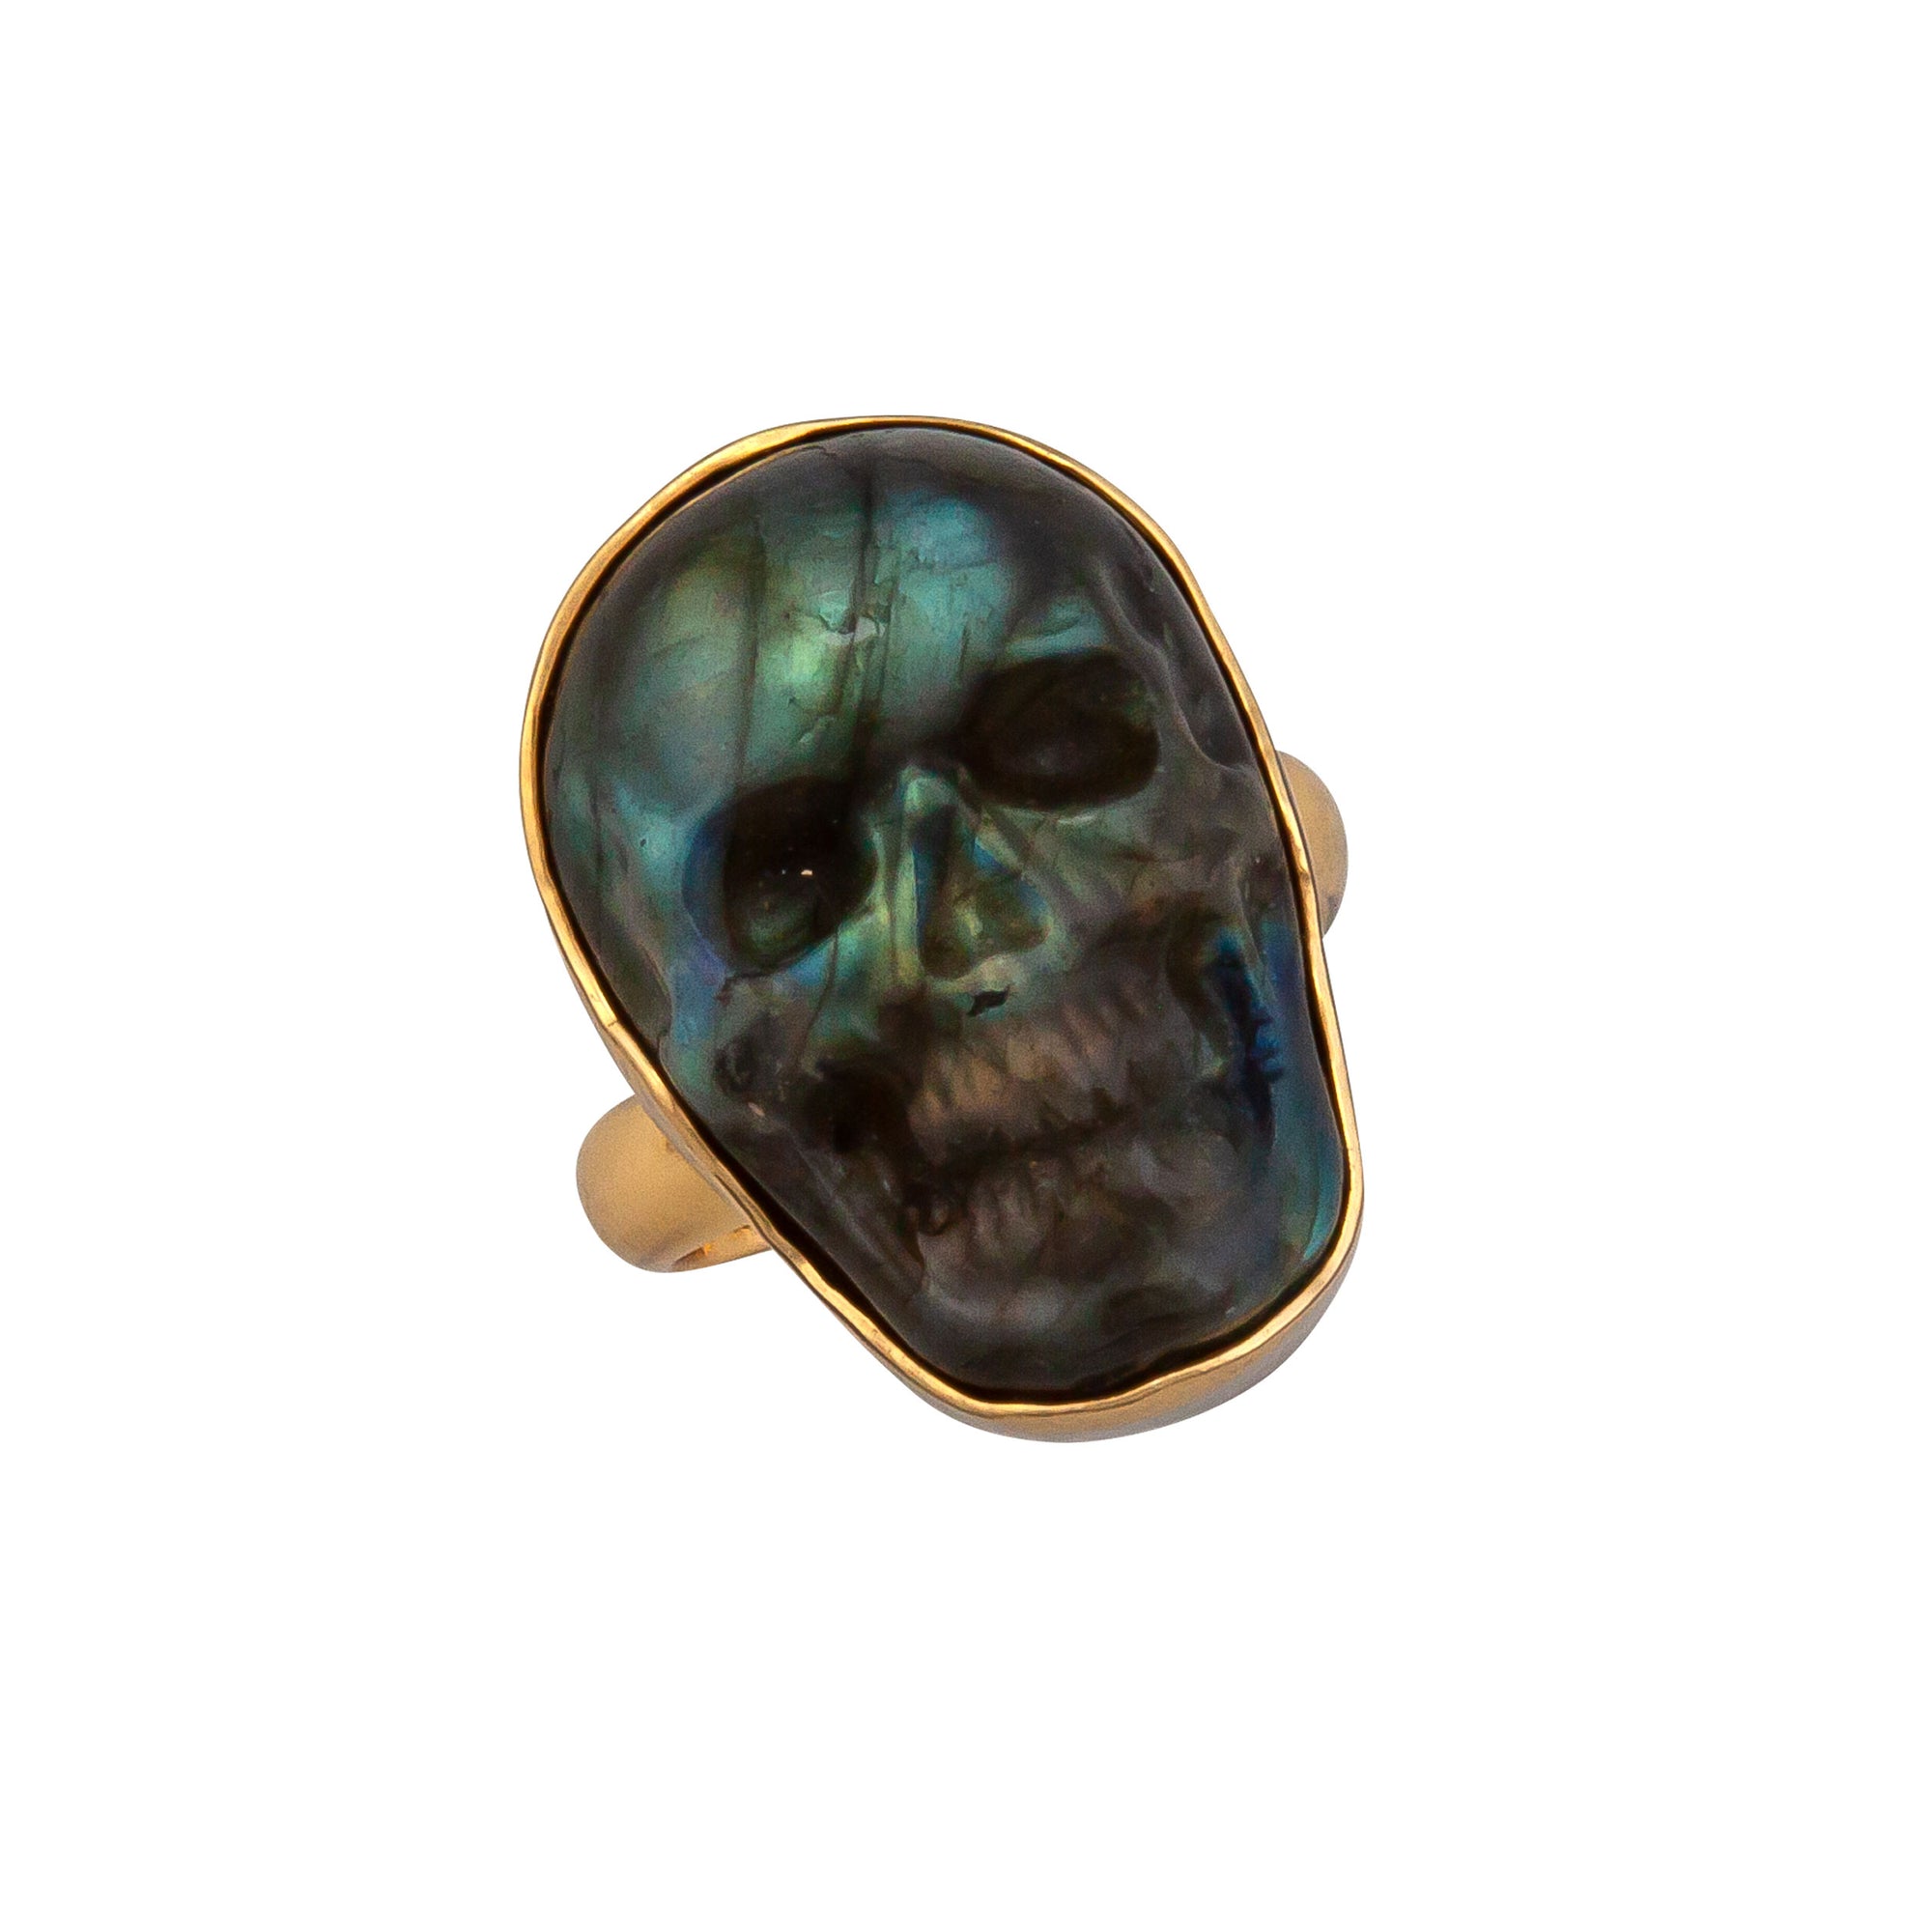 Alchemia Labradorite Skull Adjustable Ring - Extra Small